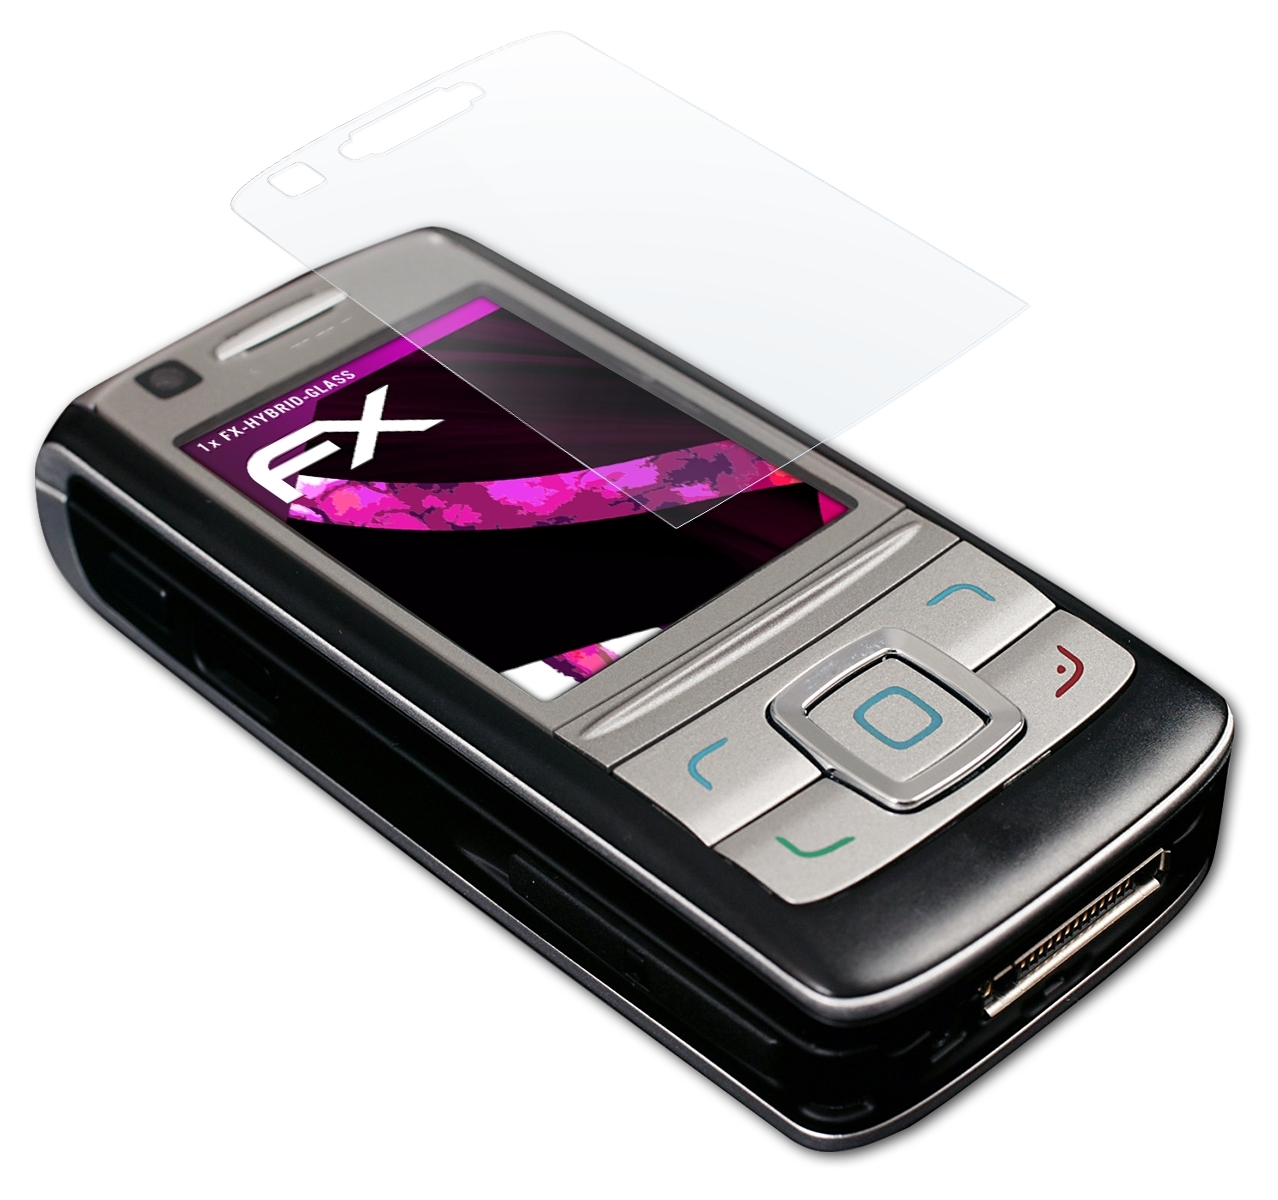 Nokia FX-Hybrid-Glass ATFOLIX 6280) Schutzglas(für